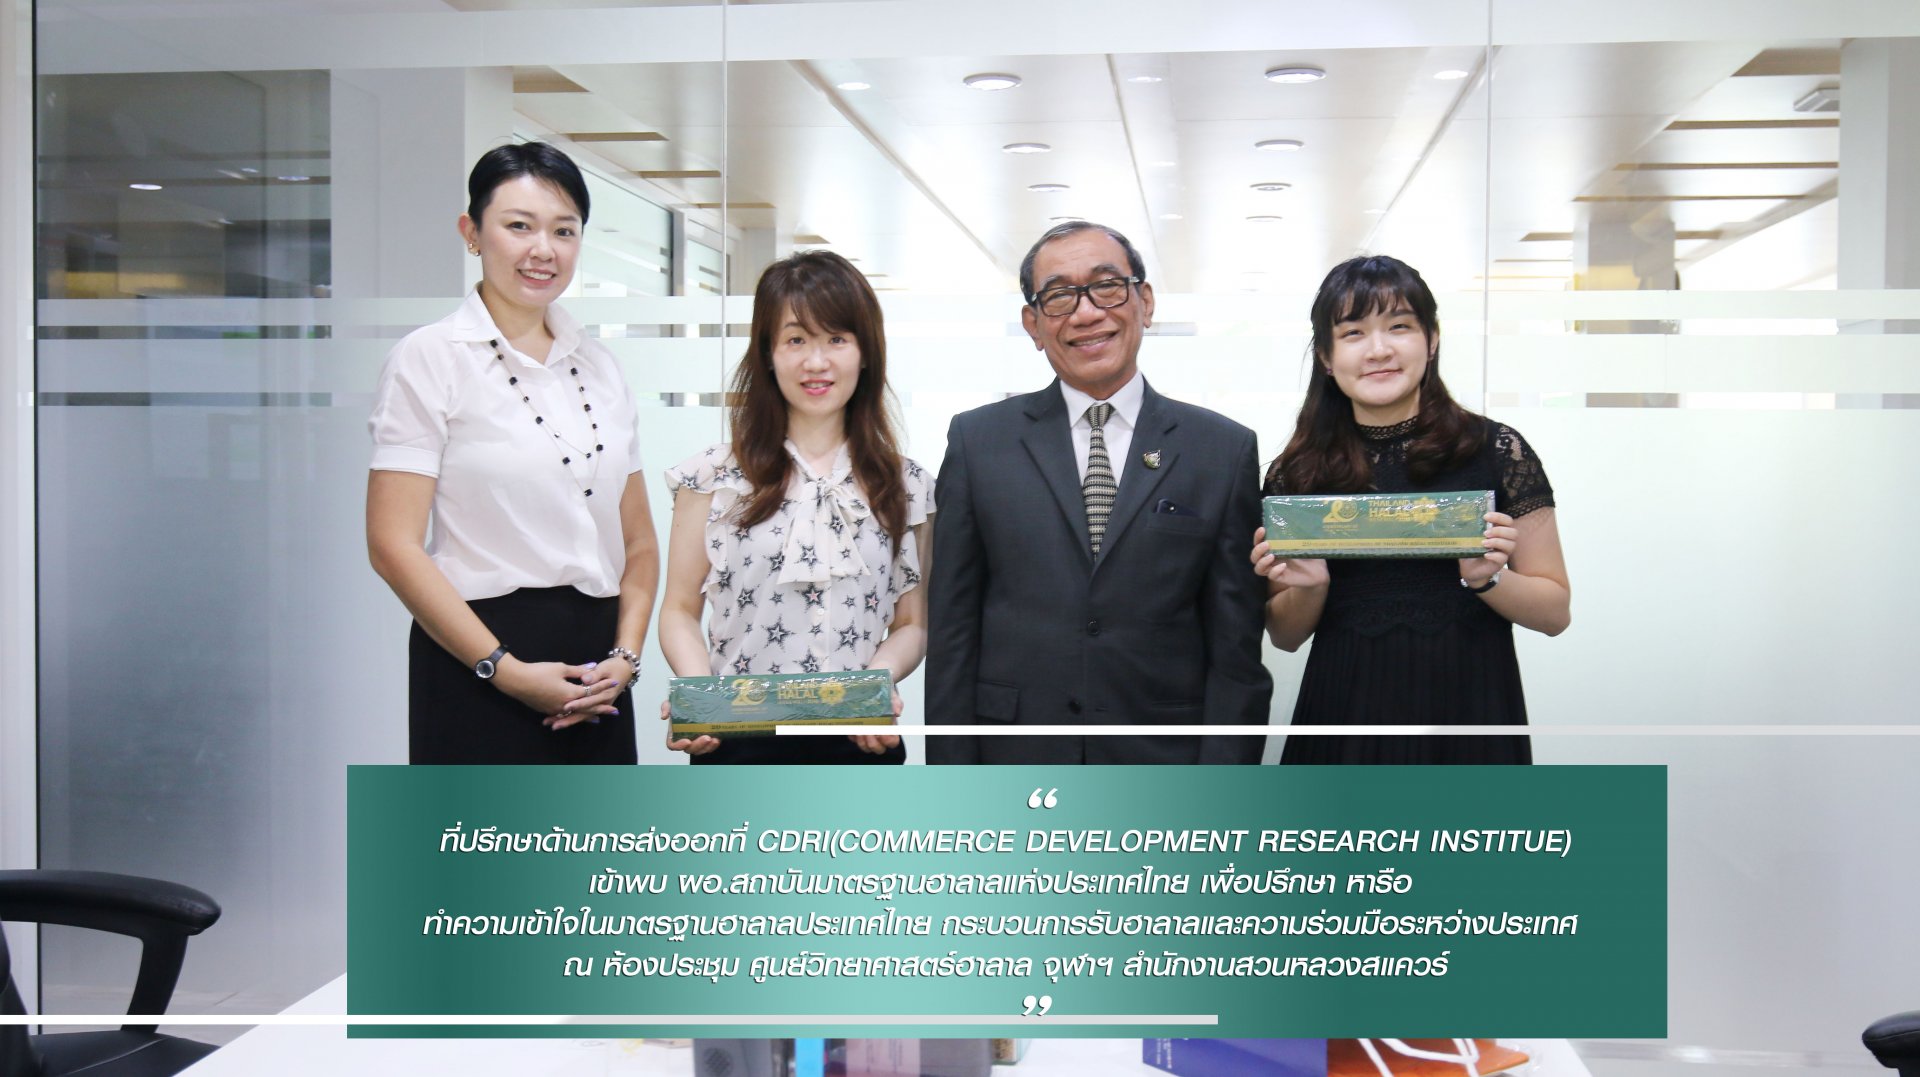 ที่ปรึกษาด้านการส่งออกที่ CDRI(Commerce Development Research Institue) เข้าพบ ผอ.สถาบันมาตรฐานฮาลาลแห่งประเทศไทย เพื่อปรึกษา หารือ 